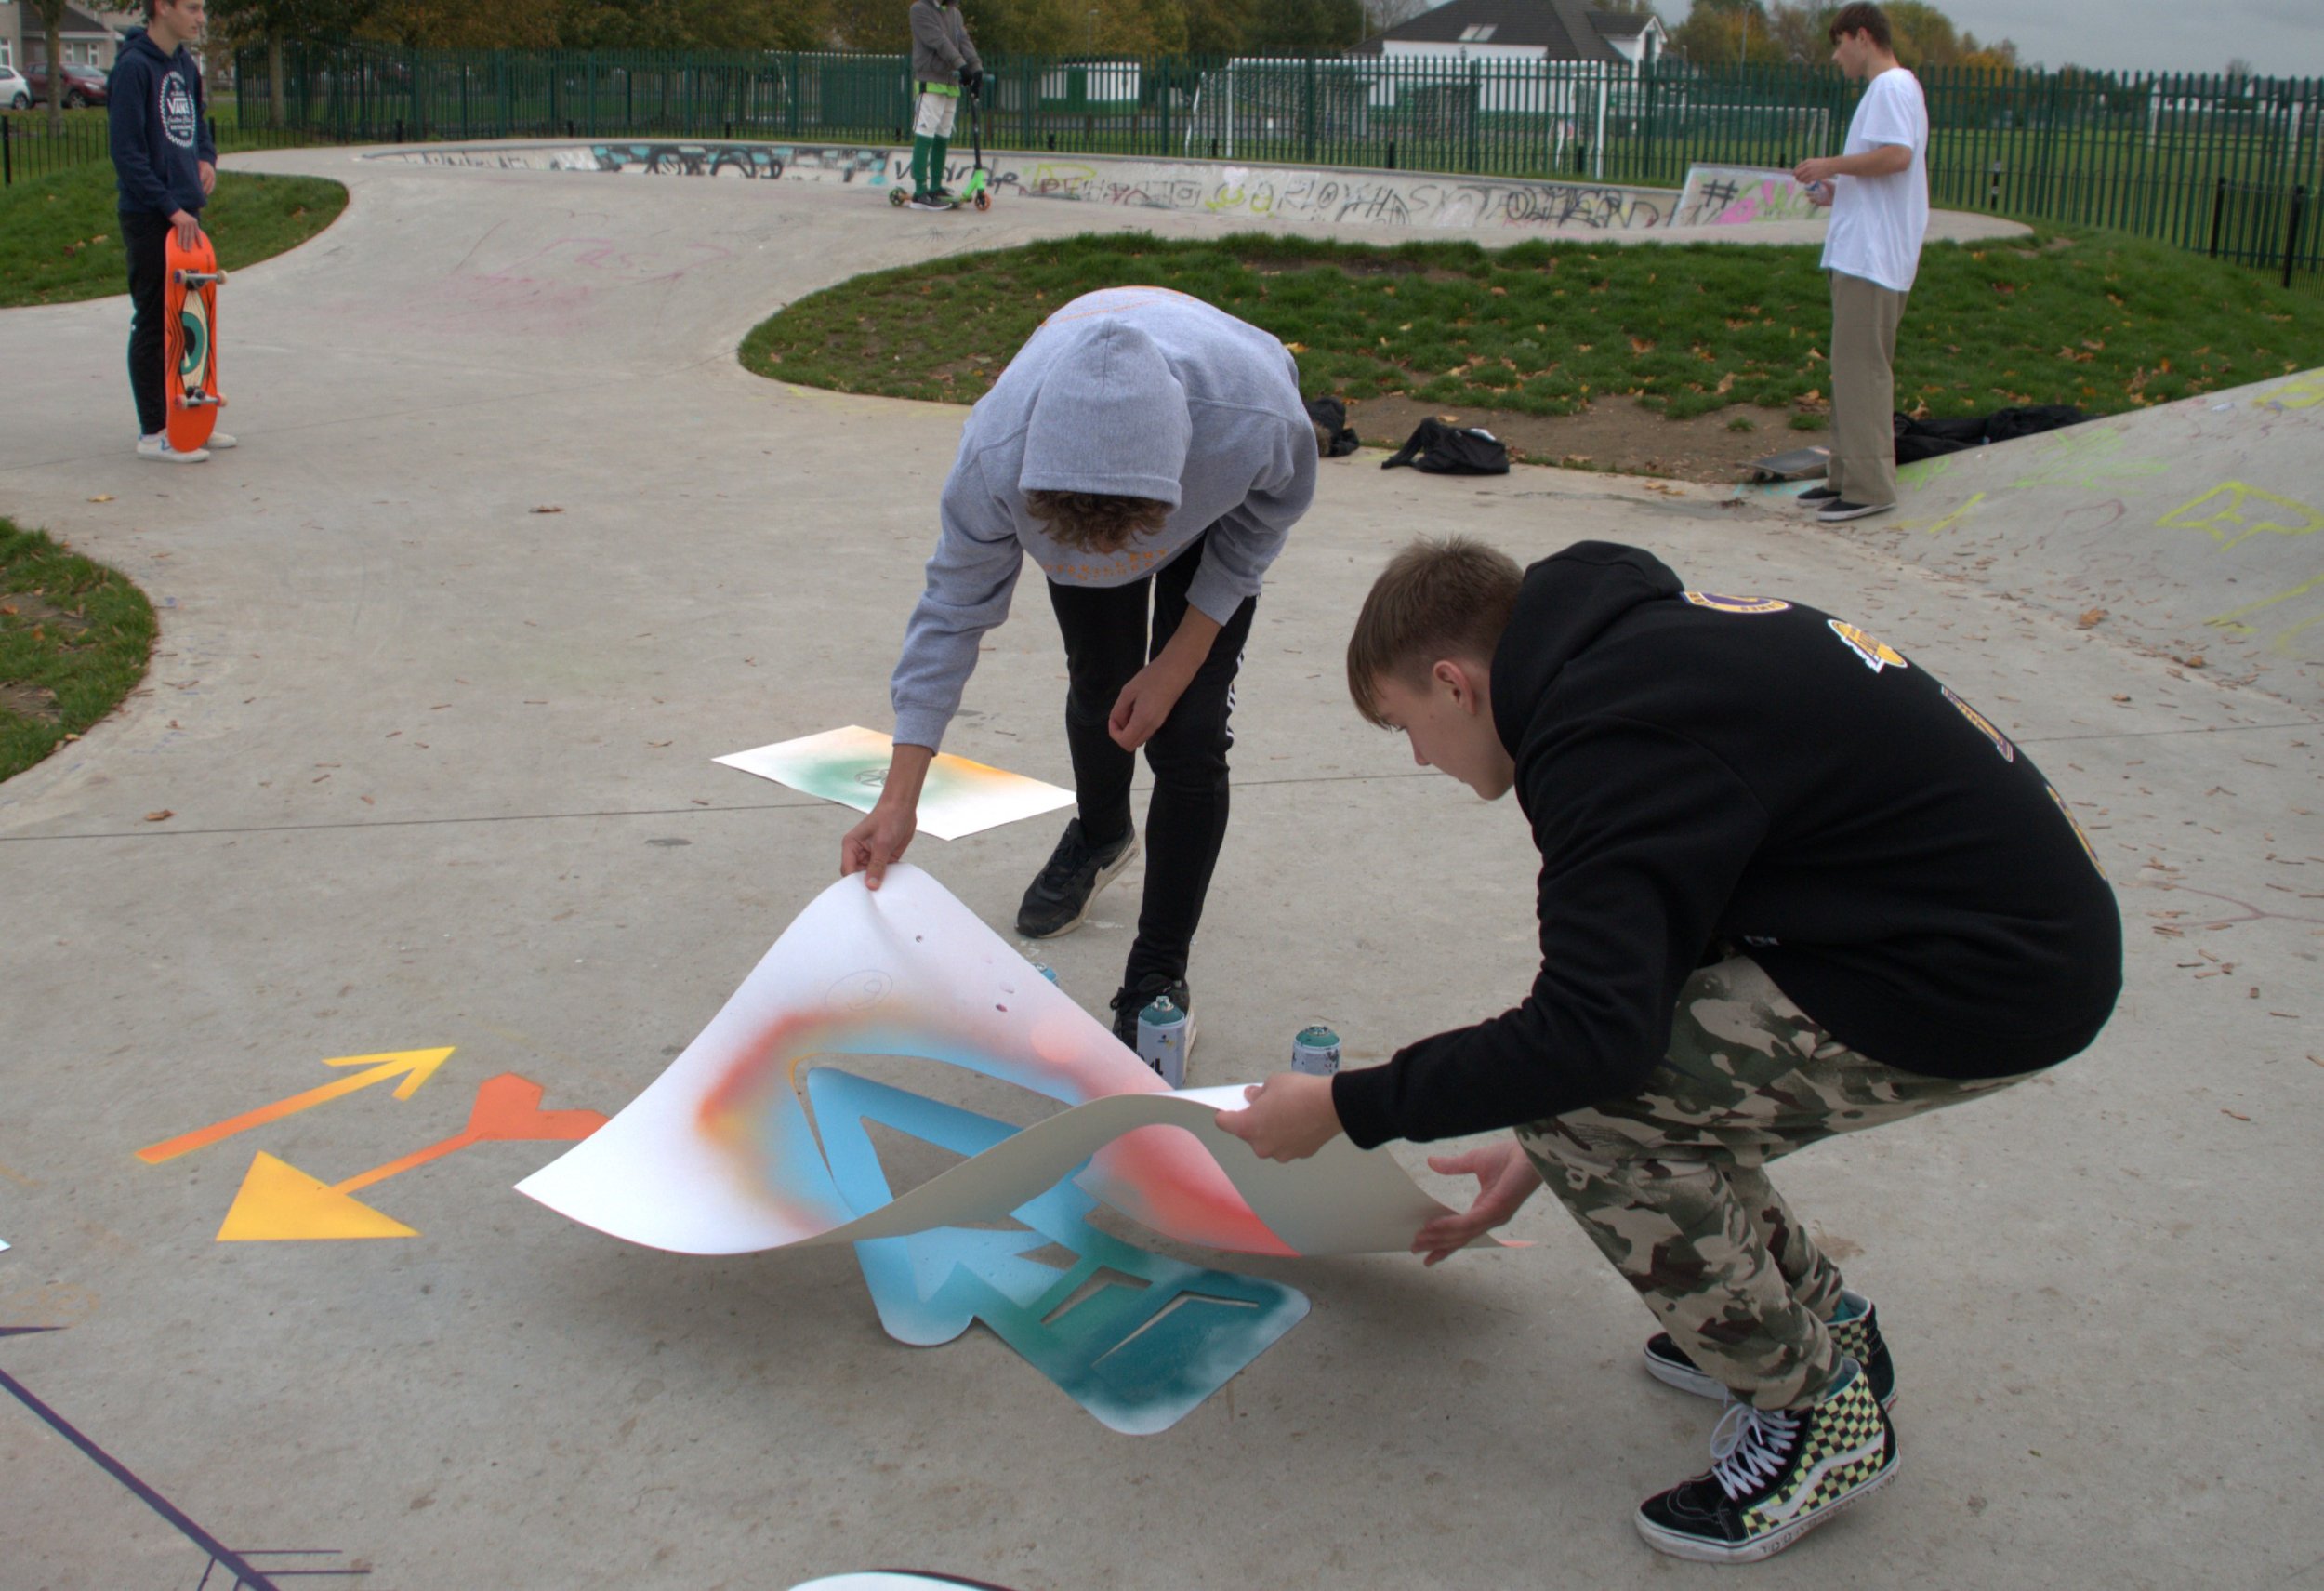 skakeboarders making art .jpg